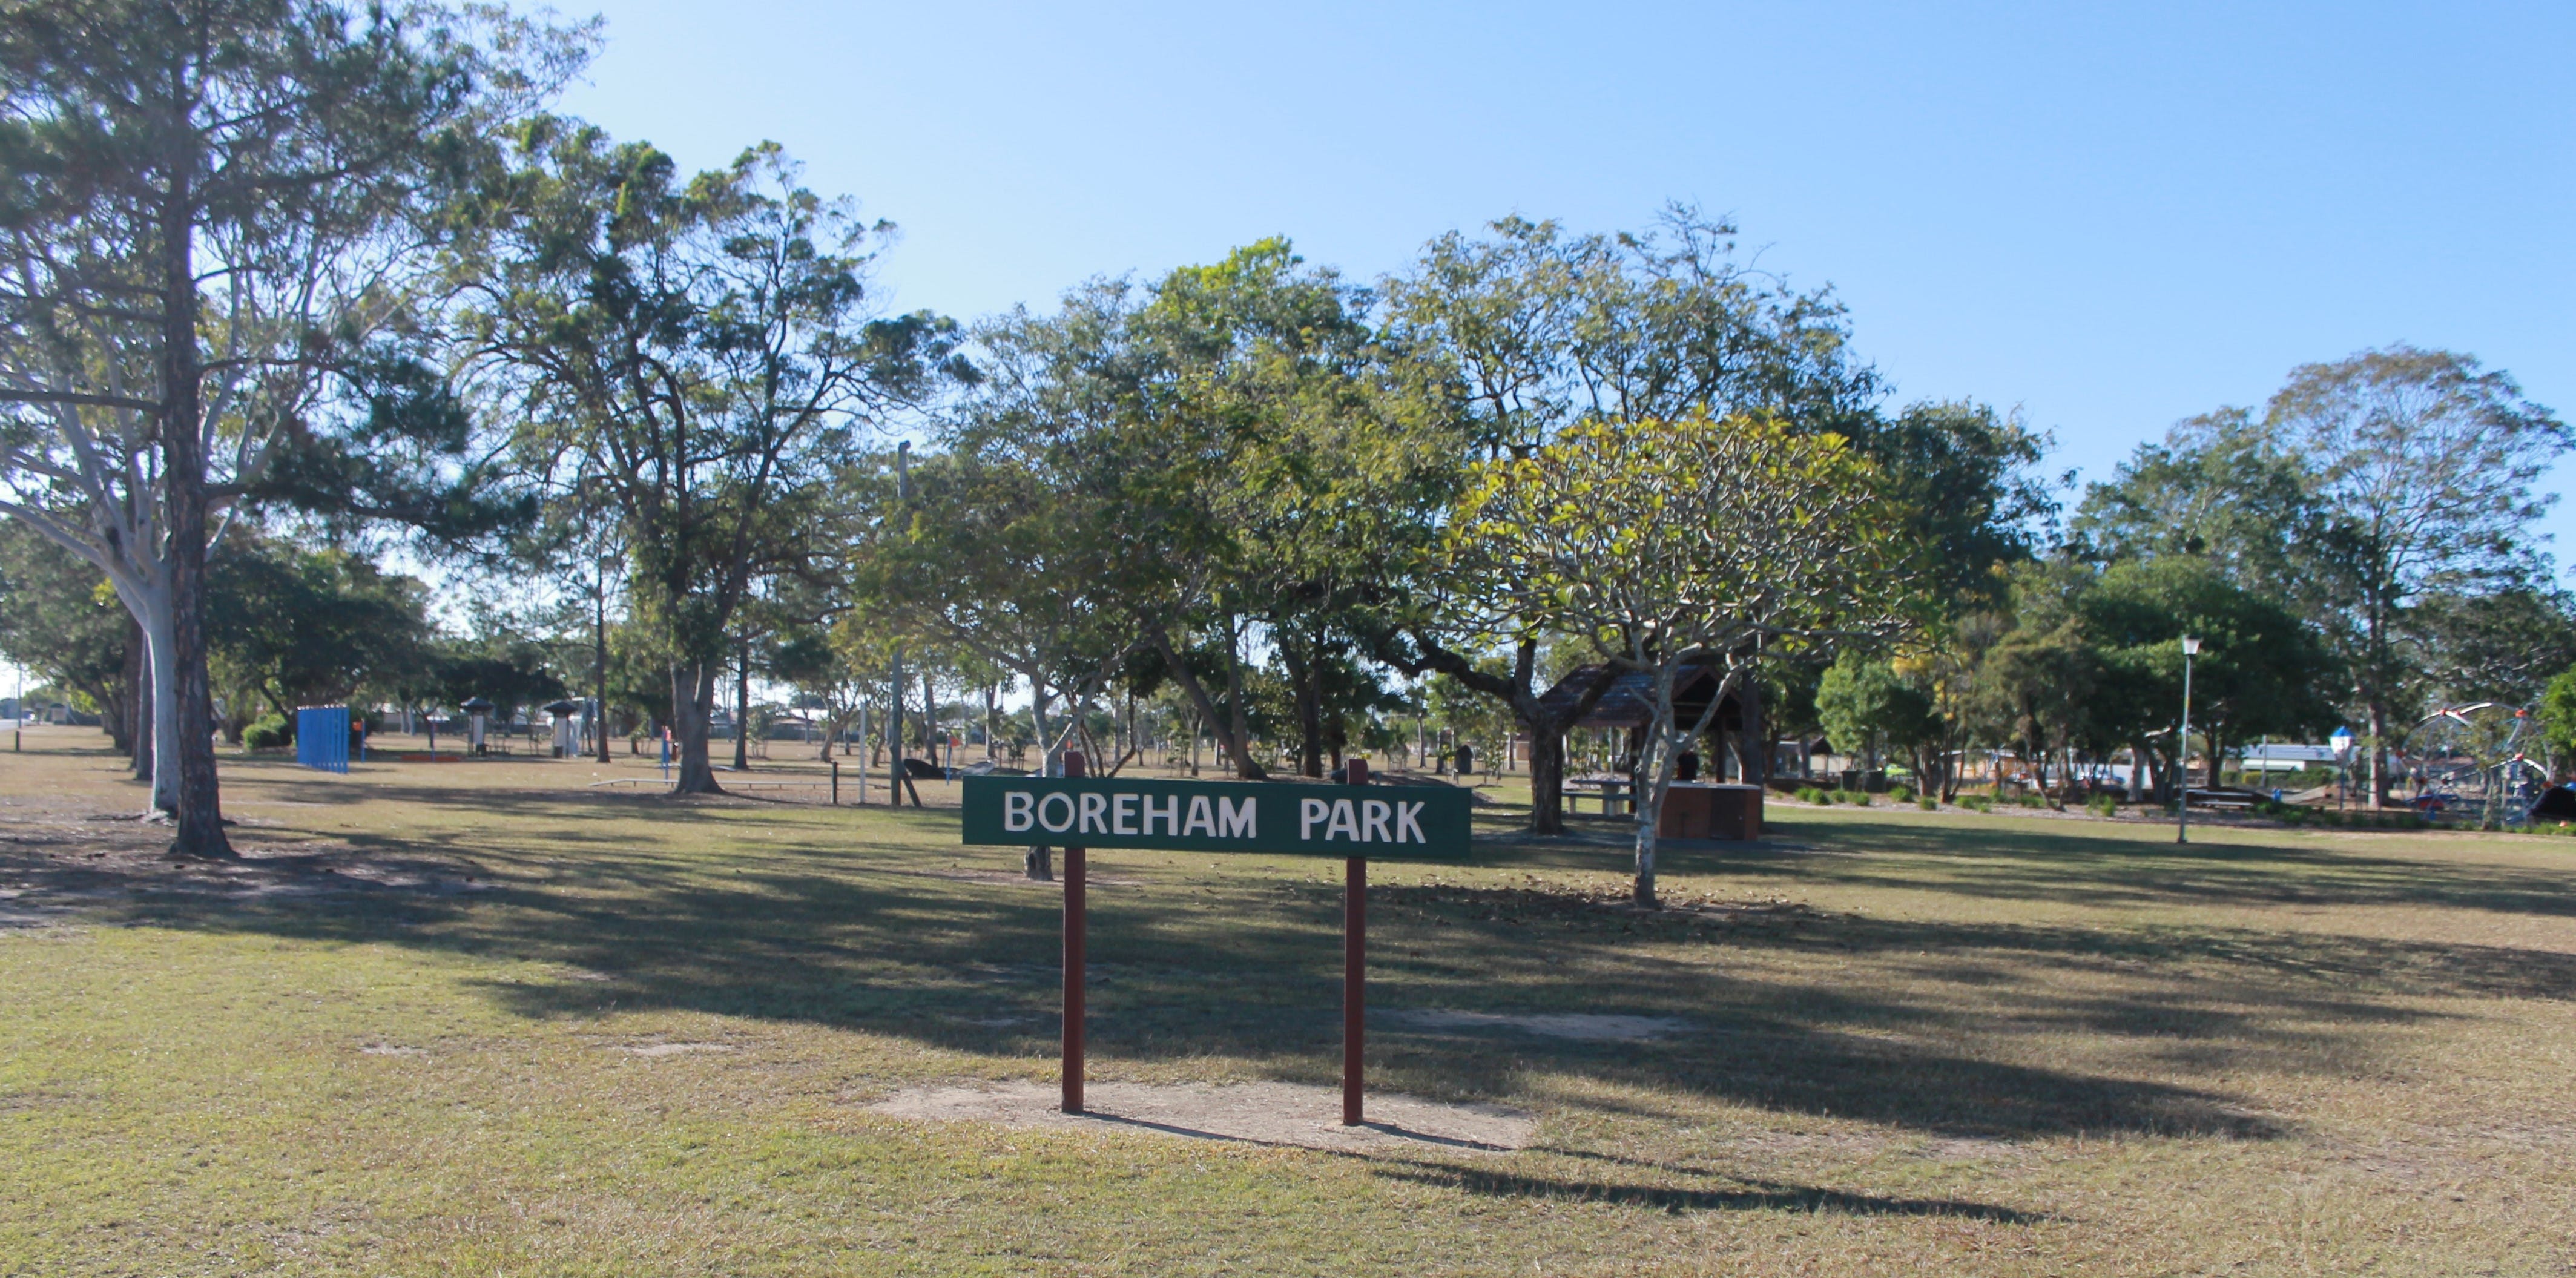 Boreham Park And Playground - thumb 0